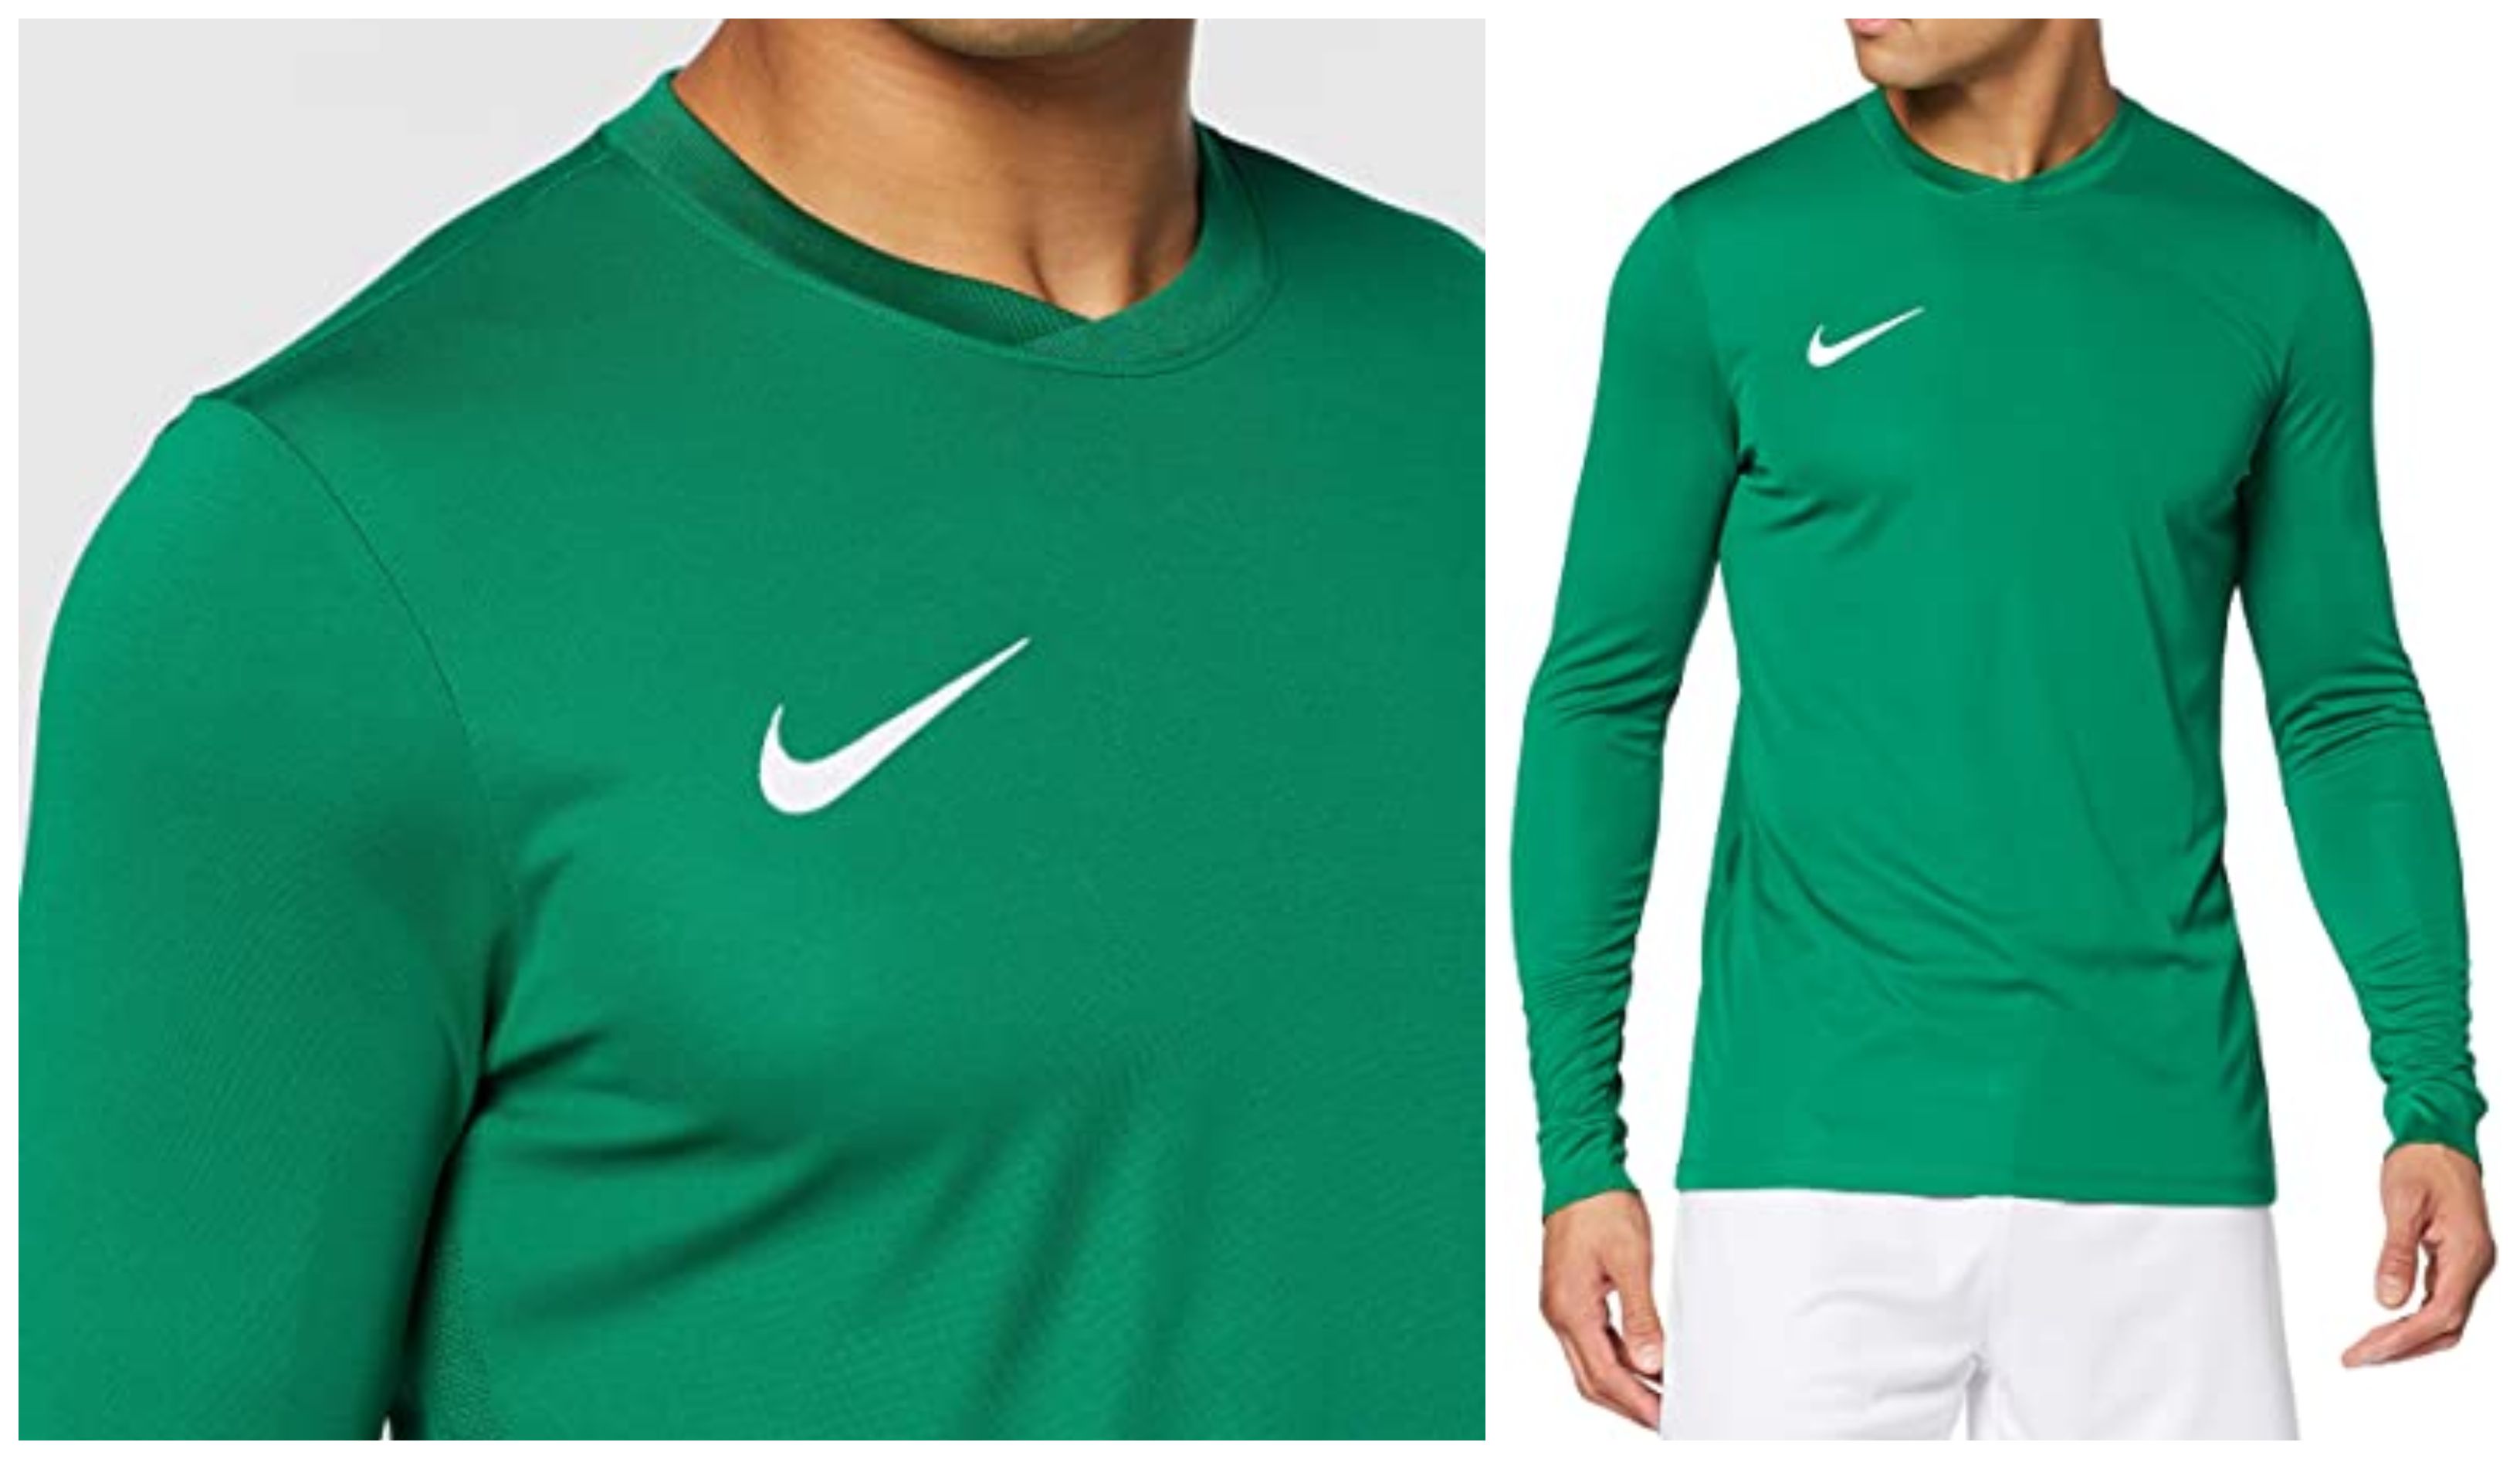 Nike triunfa con esta camiseta de manga larga de deporte